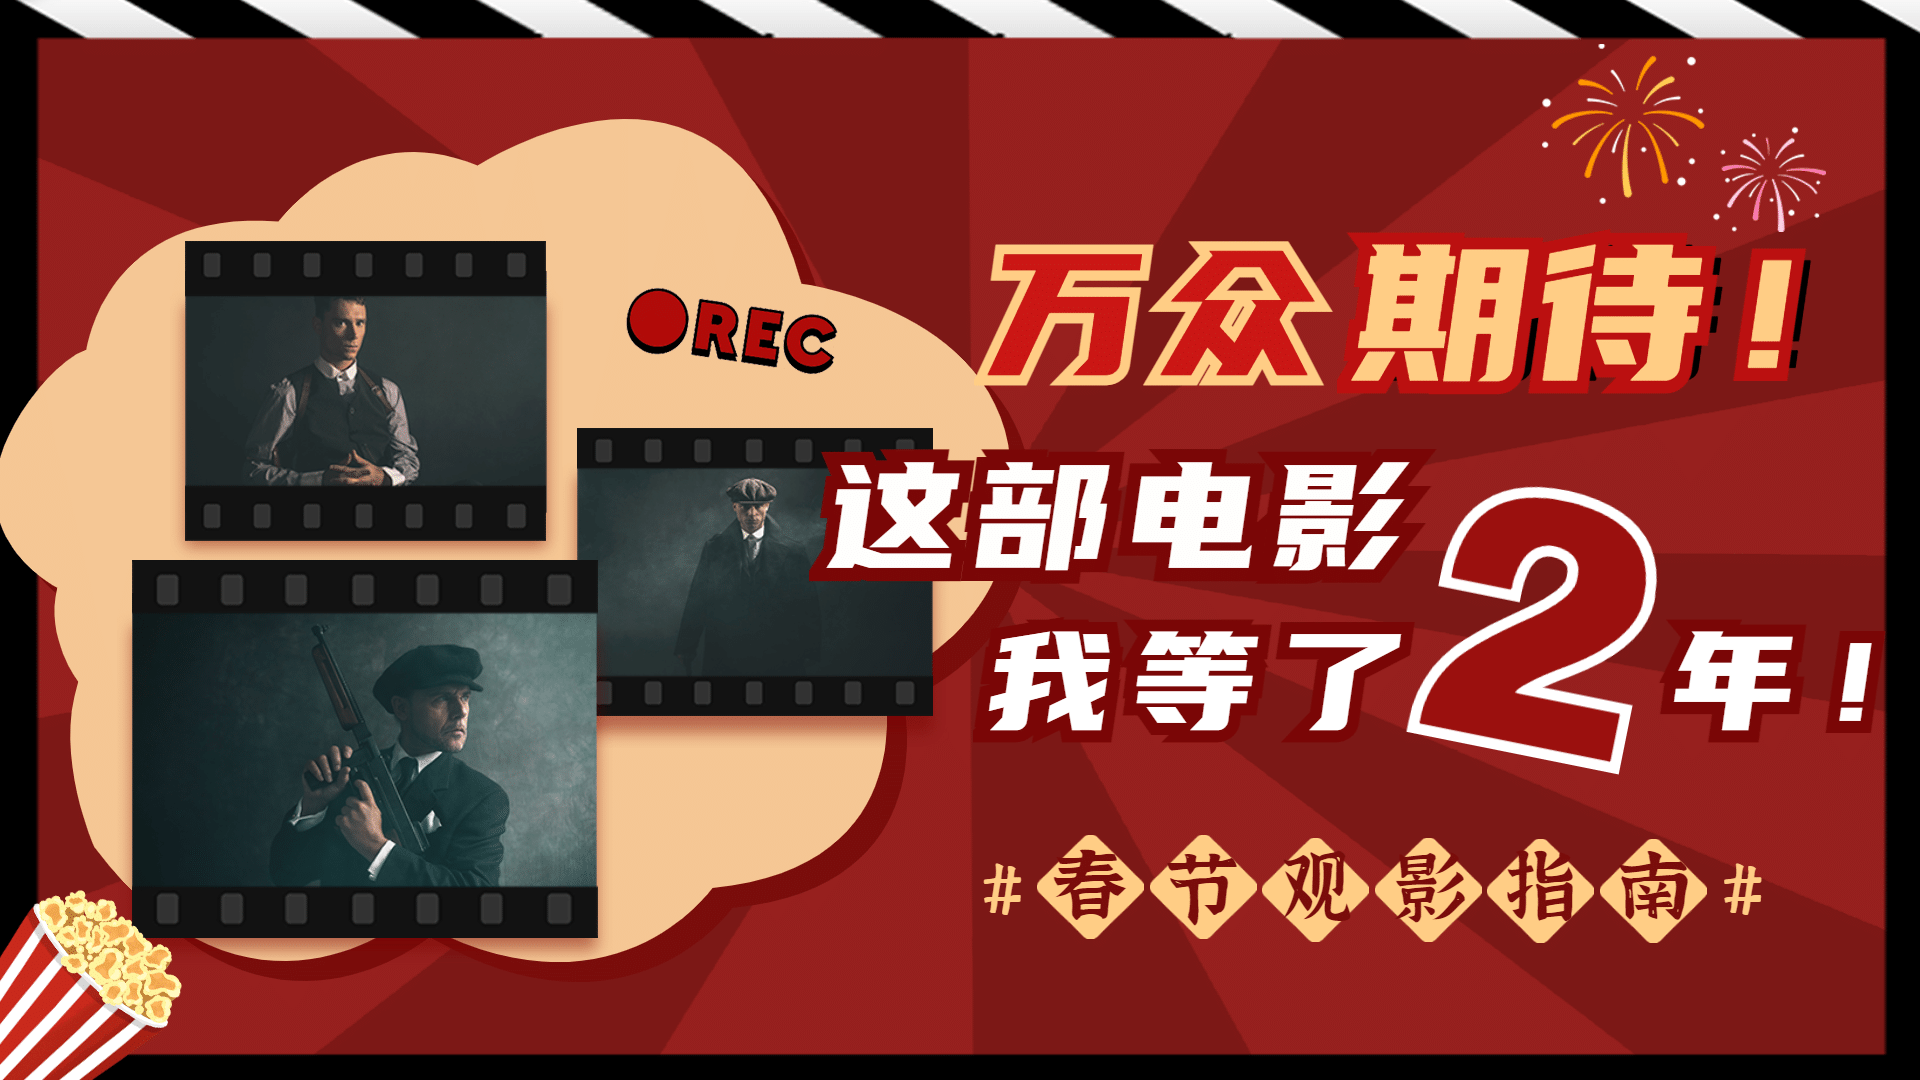 春节档电影解说推荐娱乐横版视频封面预览效果